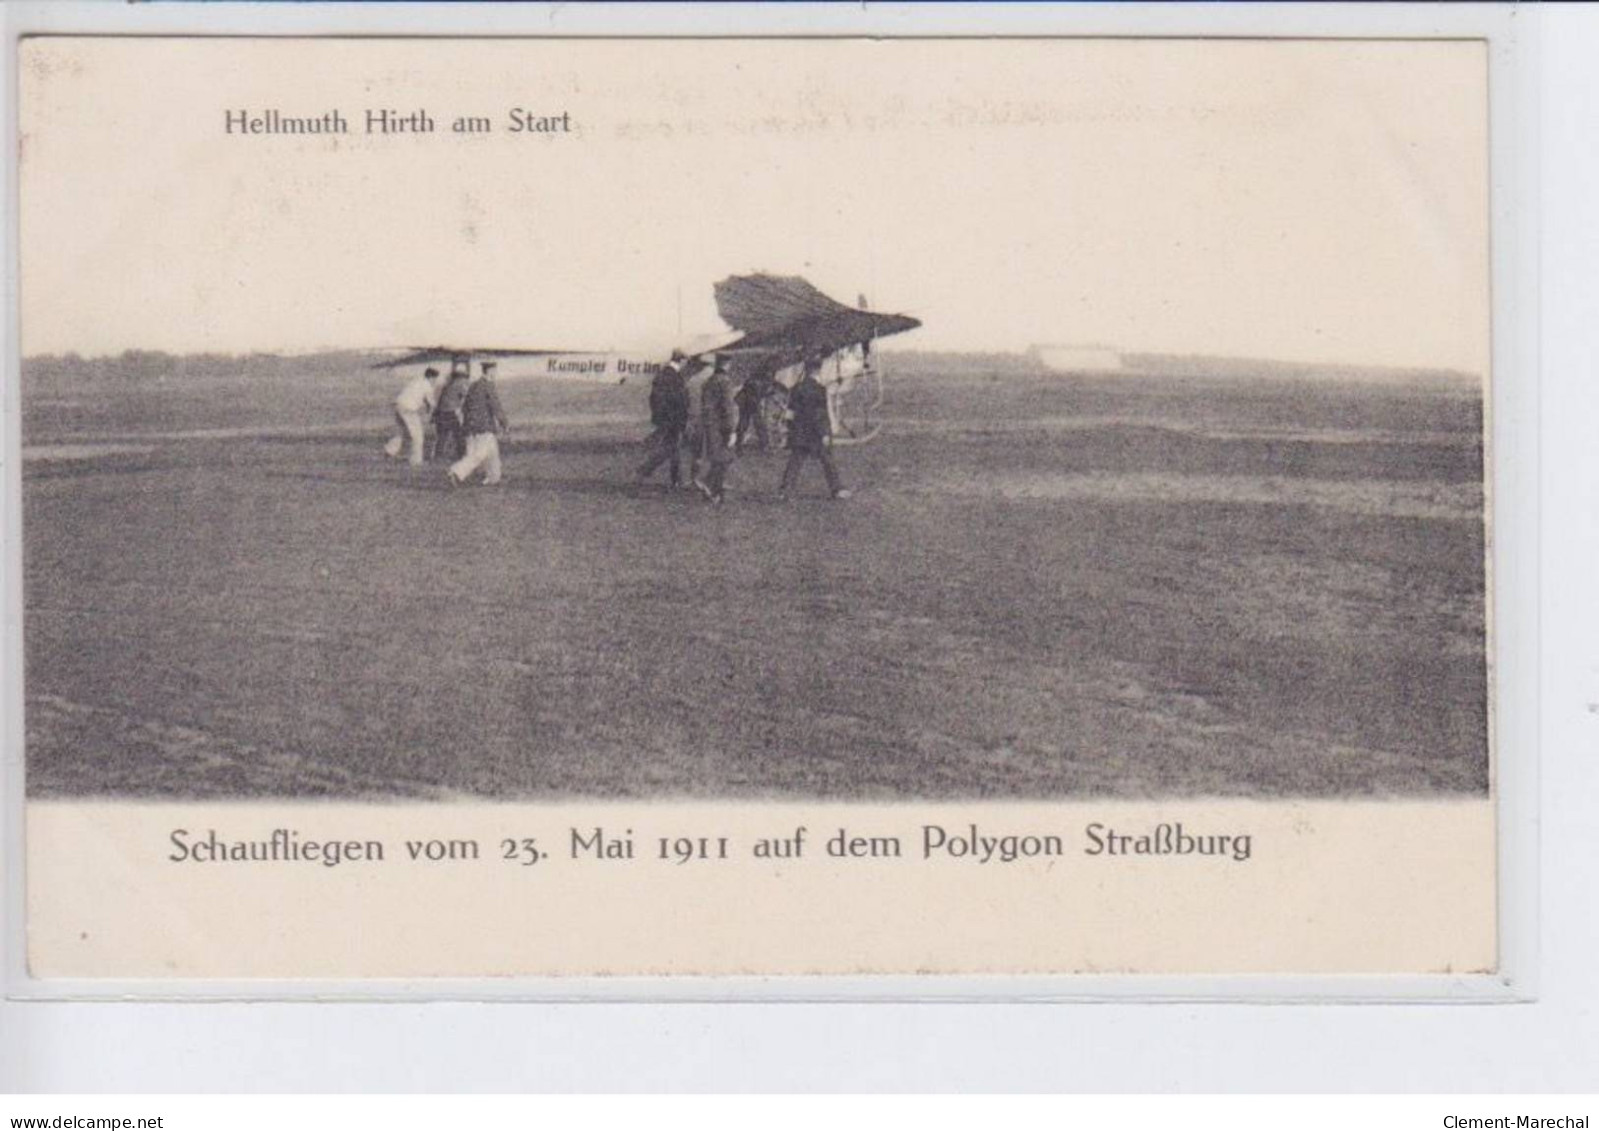 STARSBOURG: Brunhuber Im Fluge, Schaufliegen Vom 23 Mai 1911, Hellmuth Hirth Am Start (Aviation) - Très Bon état - Strasbourg